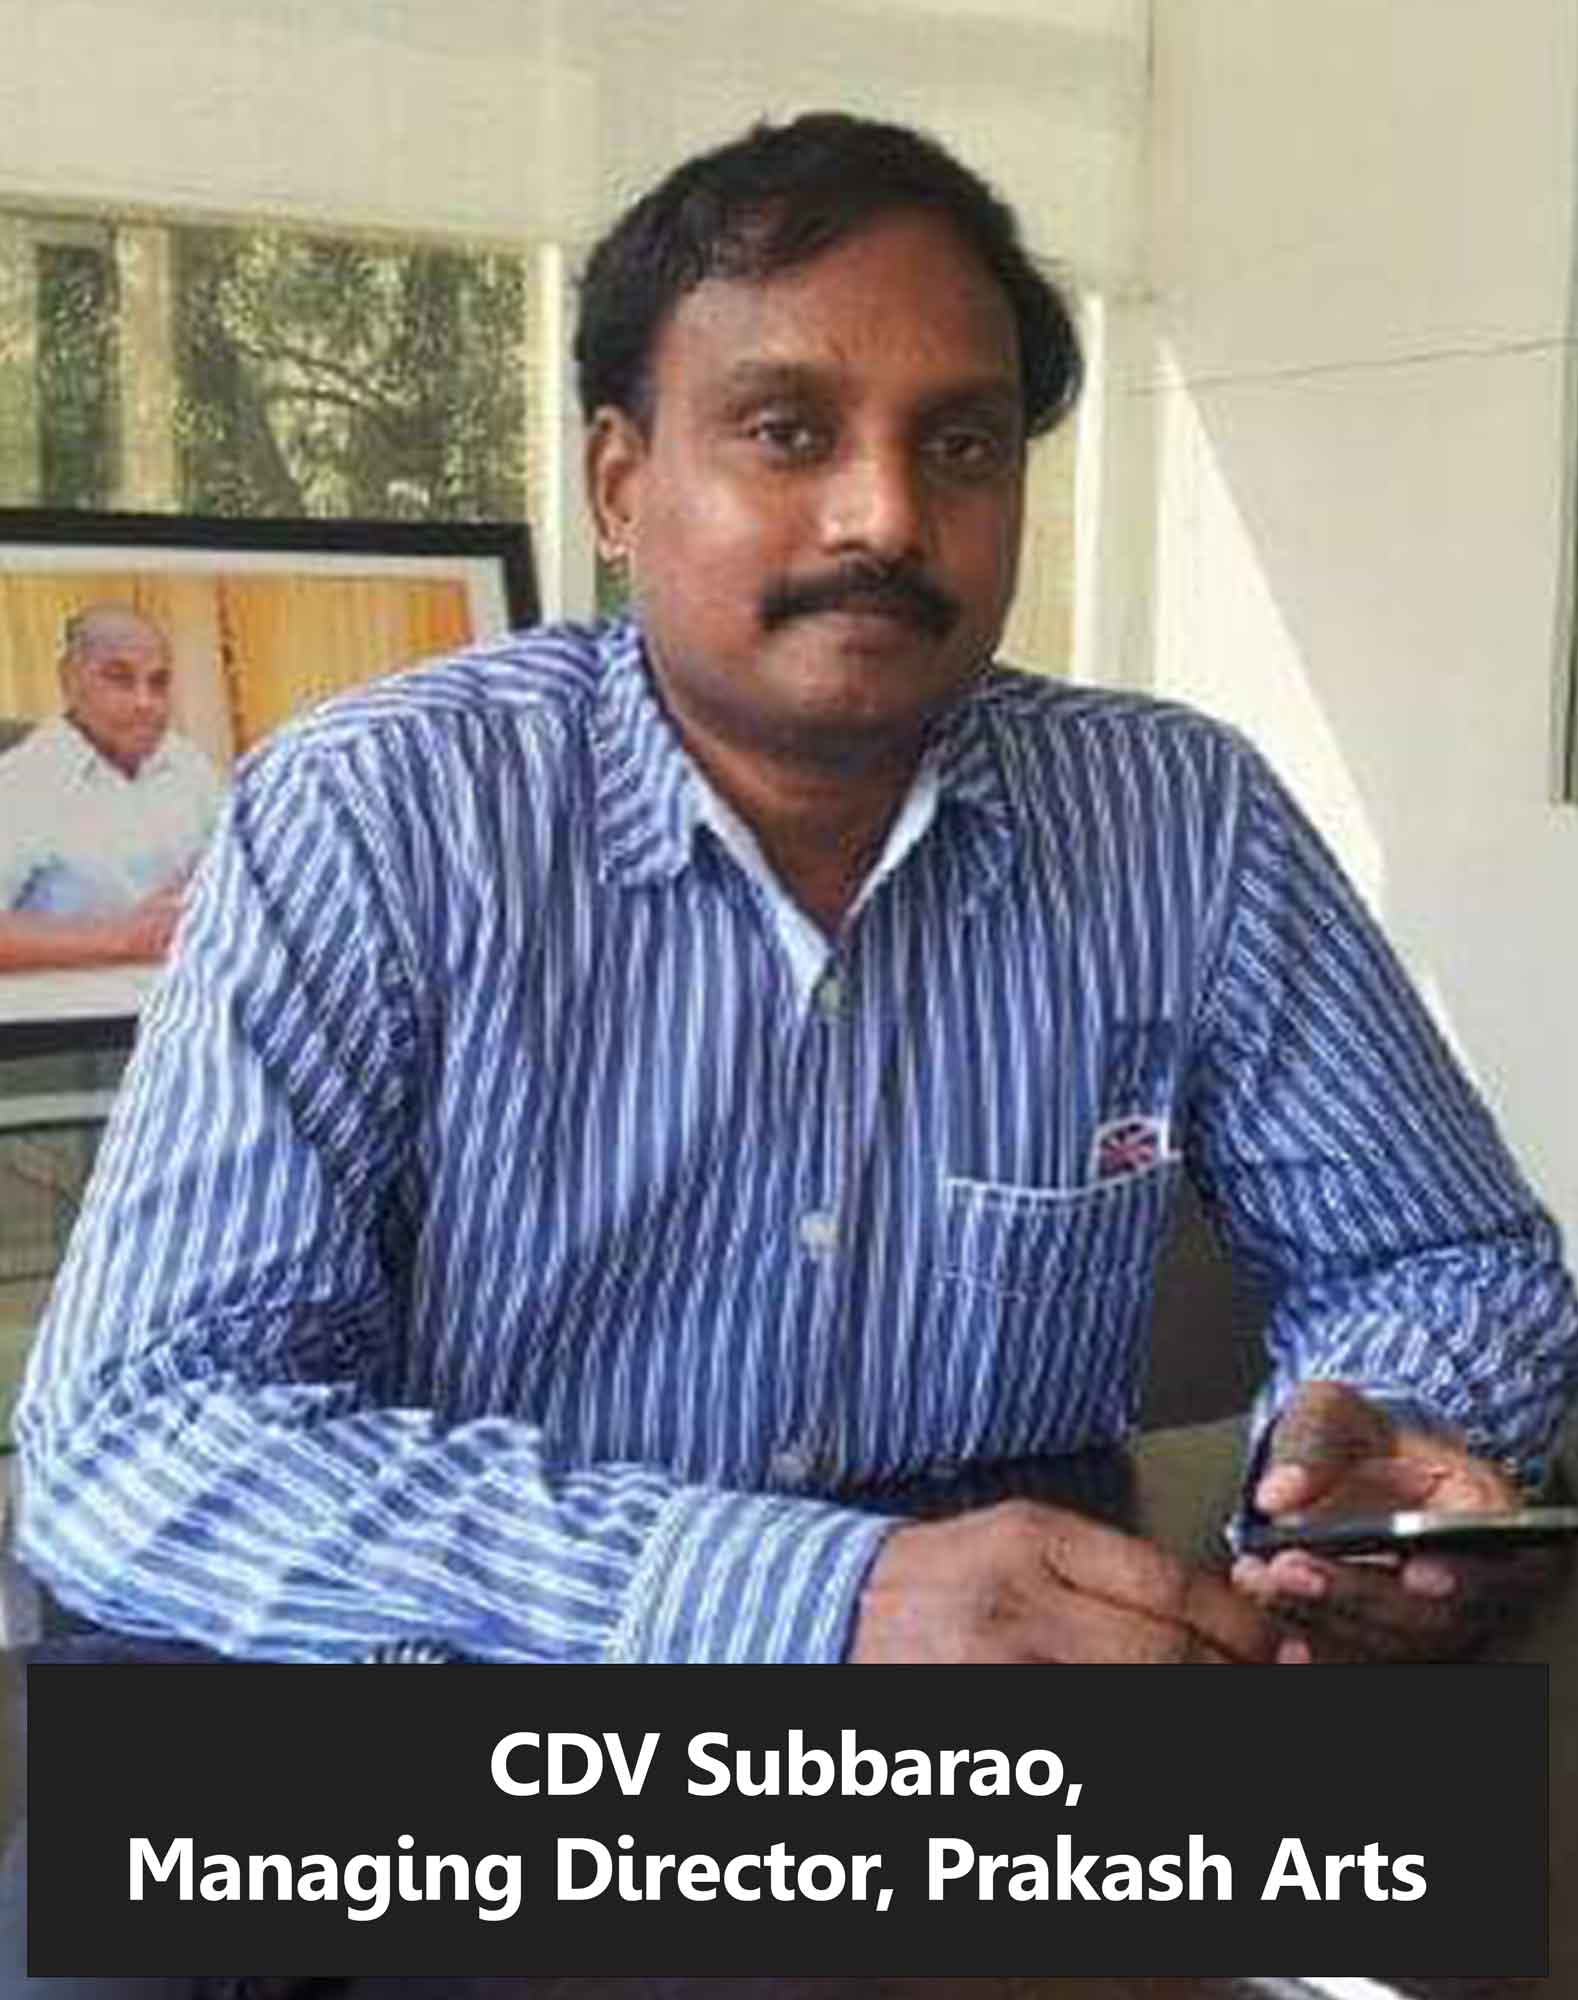 CDV Subbarao, Managing Director, Prakash Arts